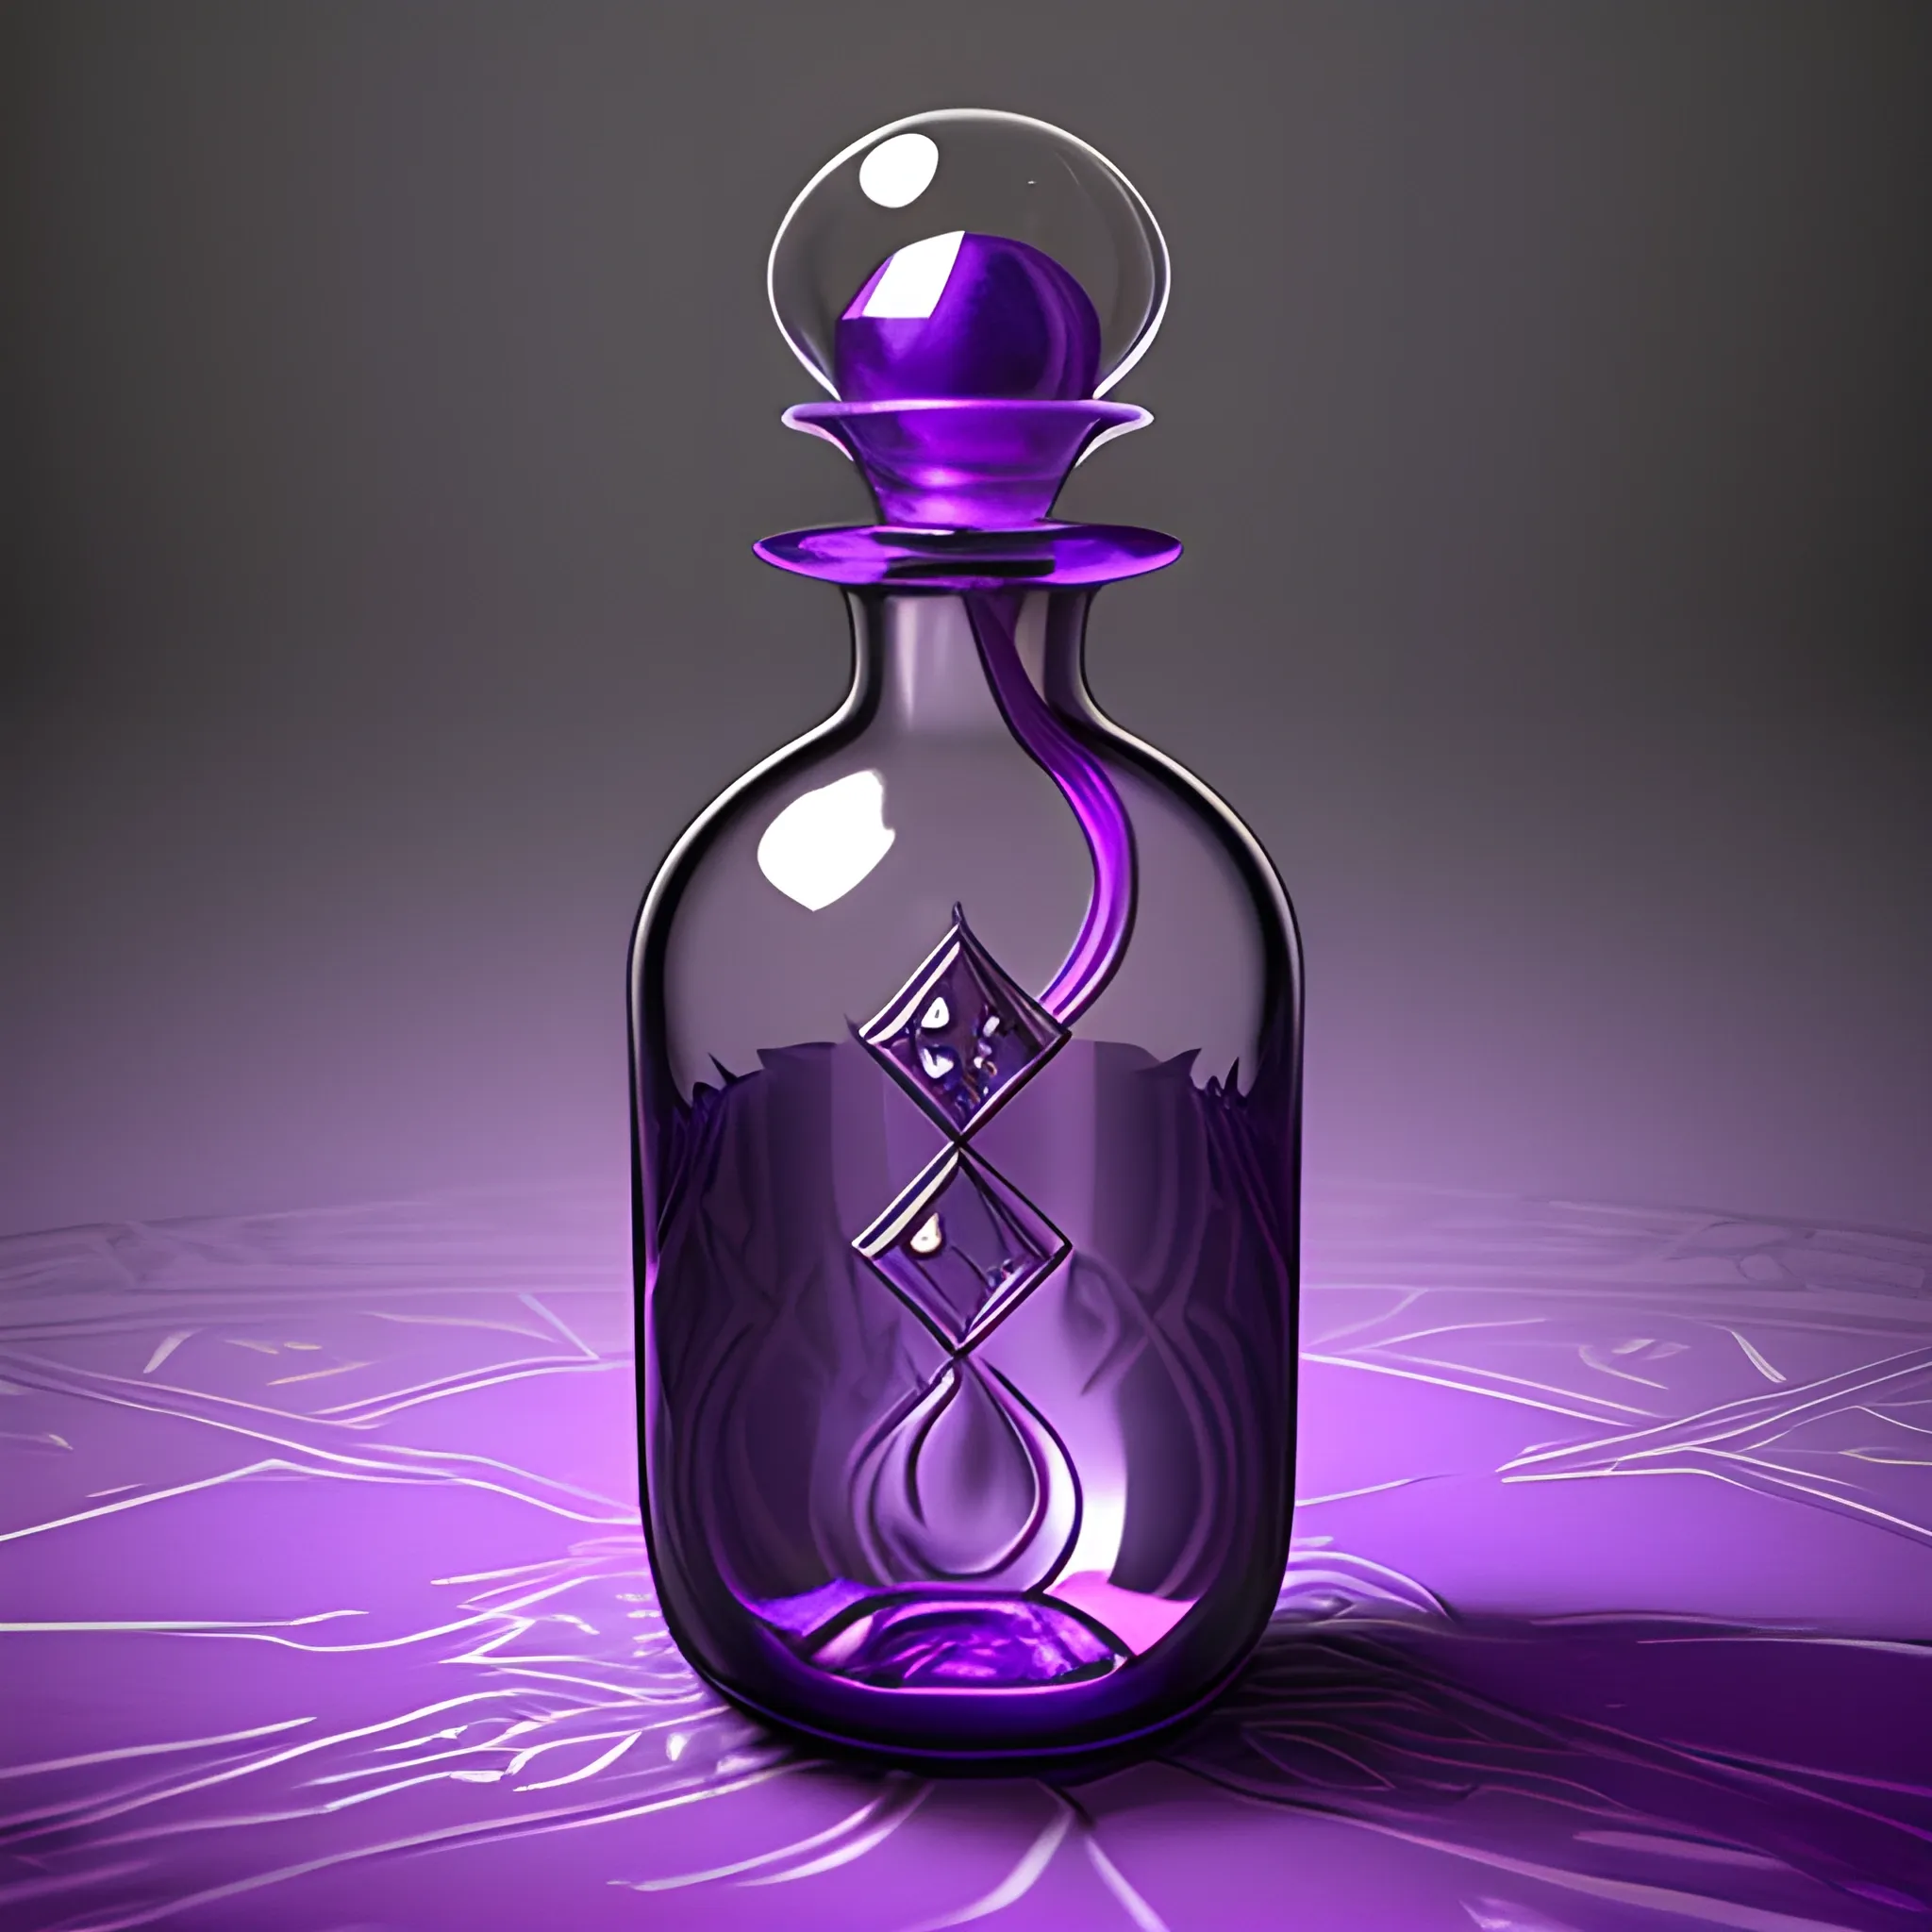 Potion bottle magic mysterious purple DnD